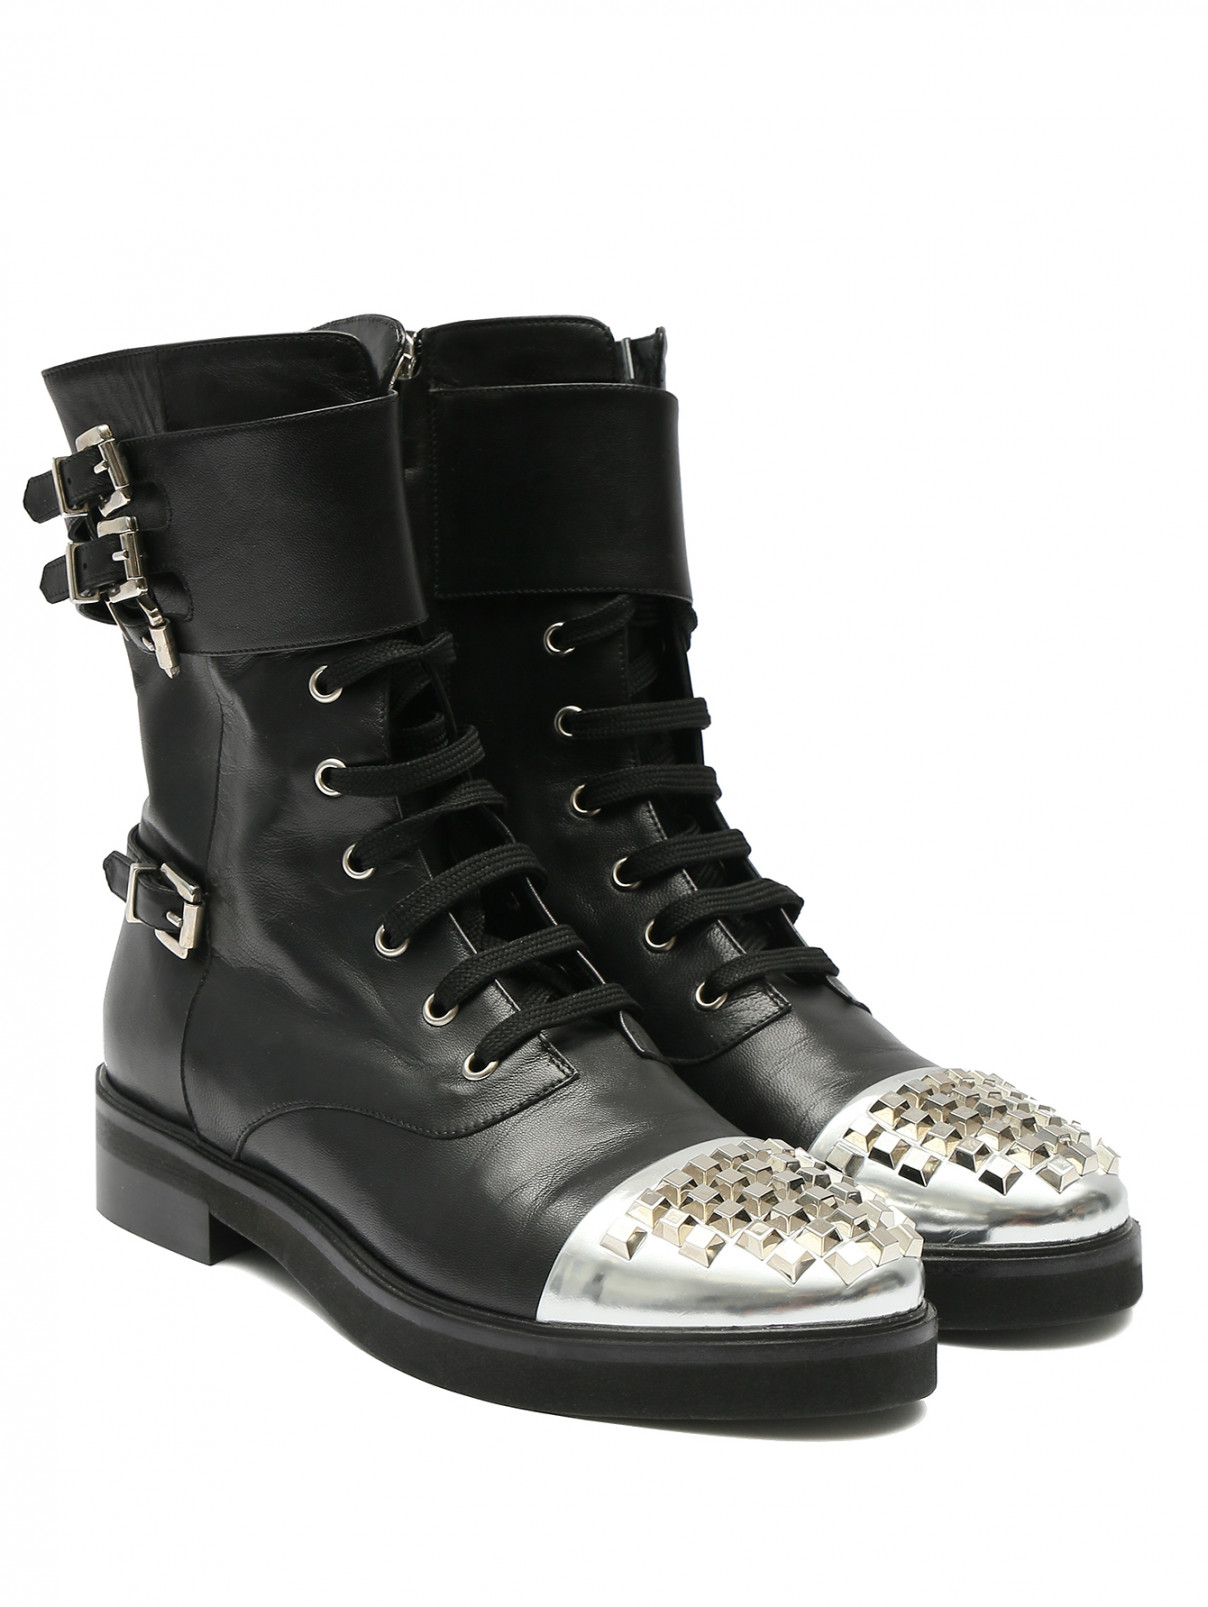 Ботинки из кожи с металлическим декором Marina Rinaldi  –  Общий вид  – Цвет:  Черный